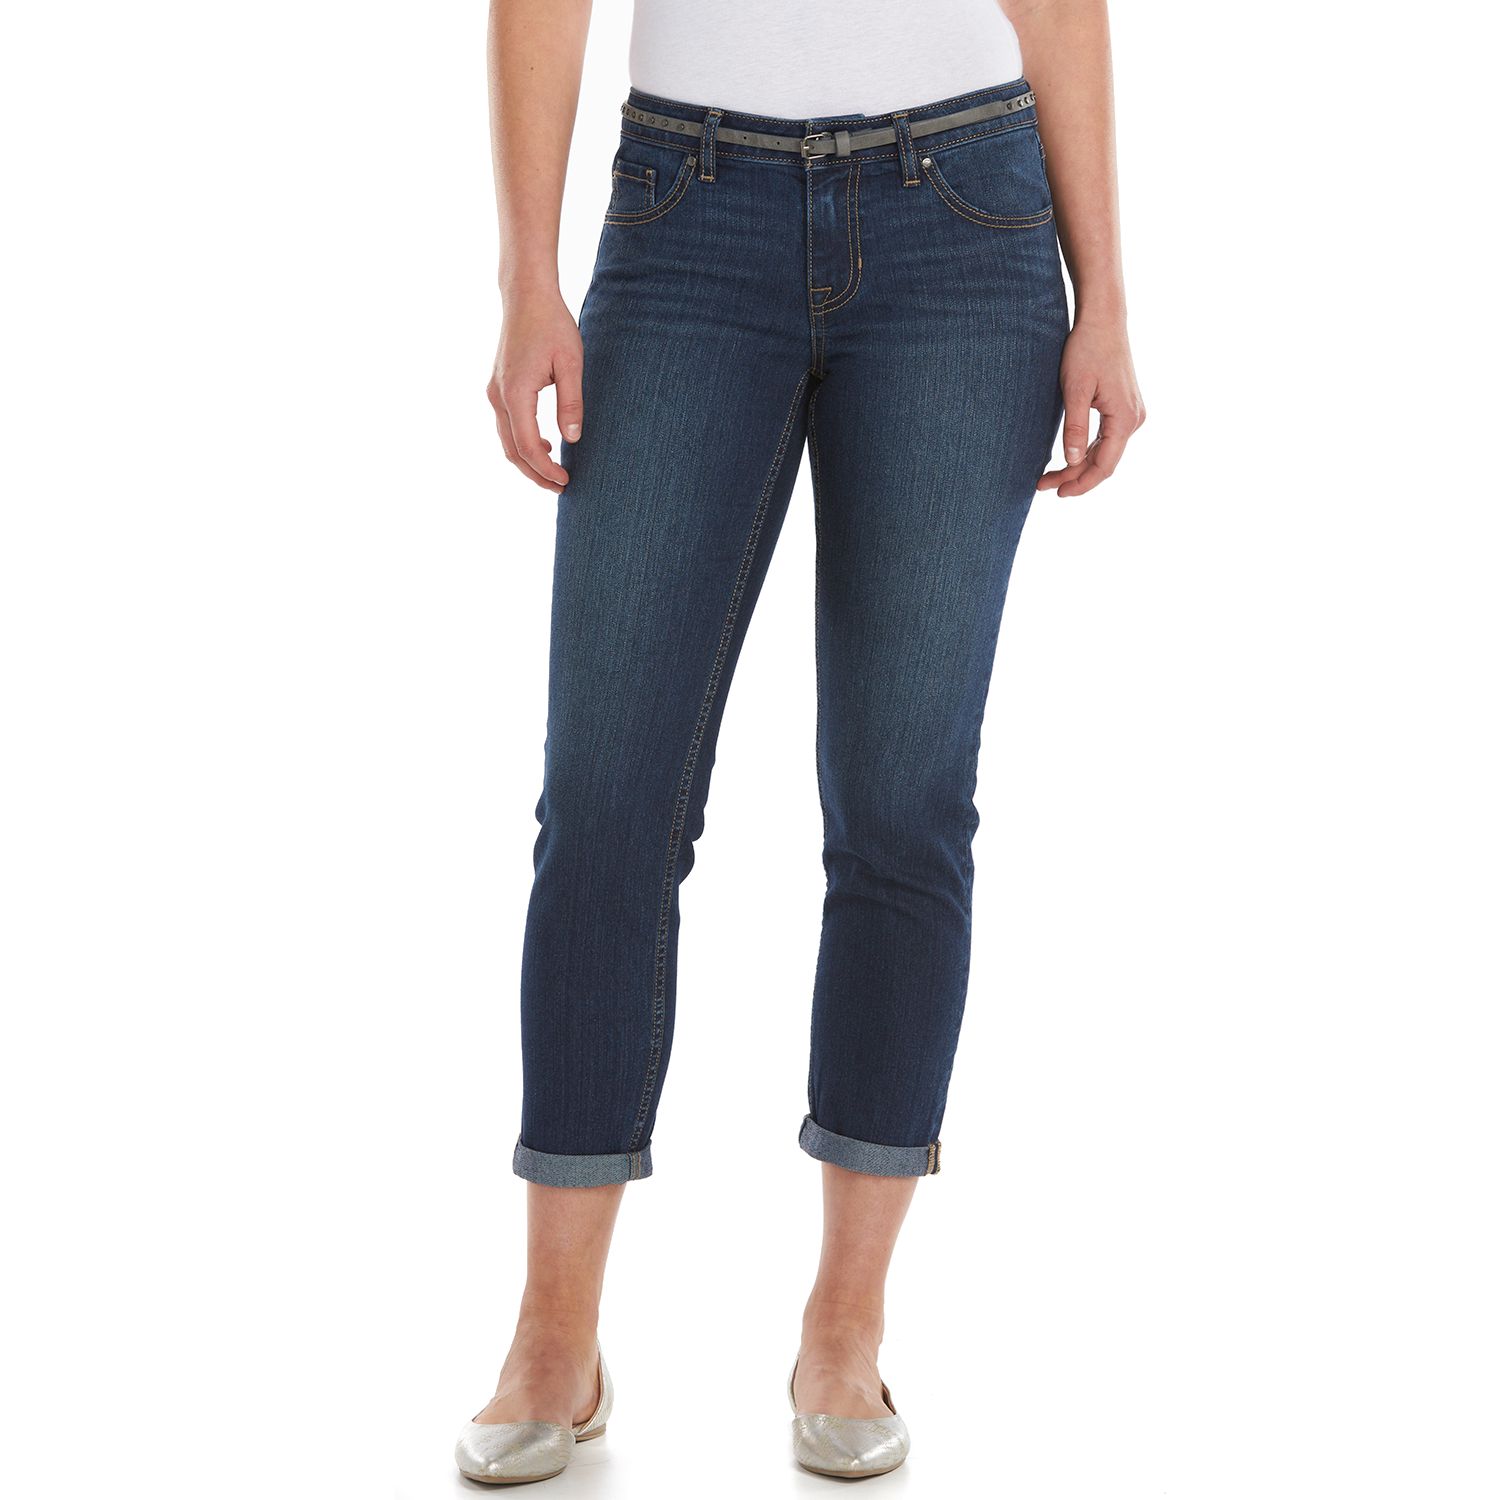 capri jeans for women